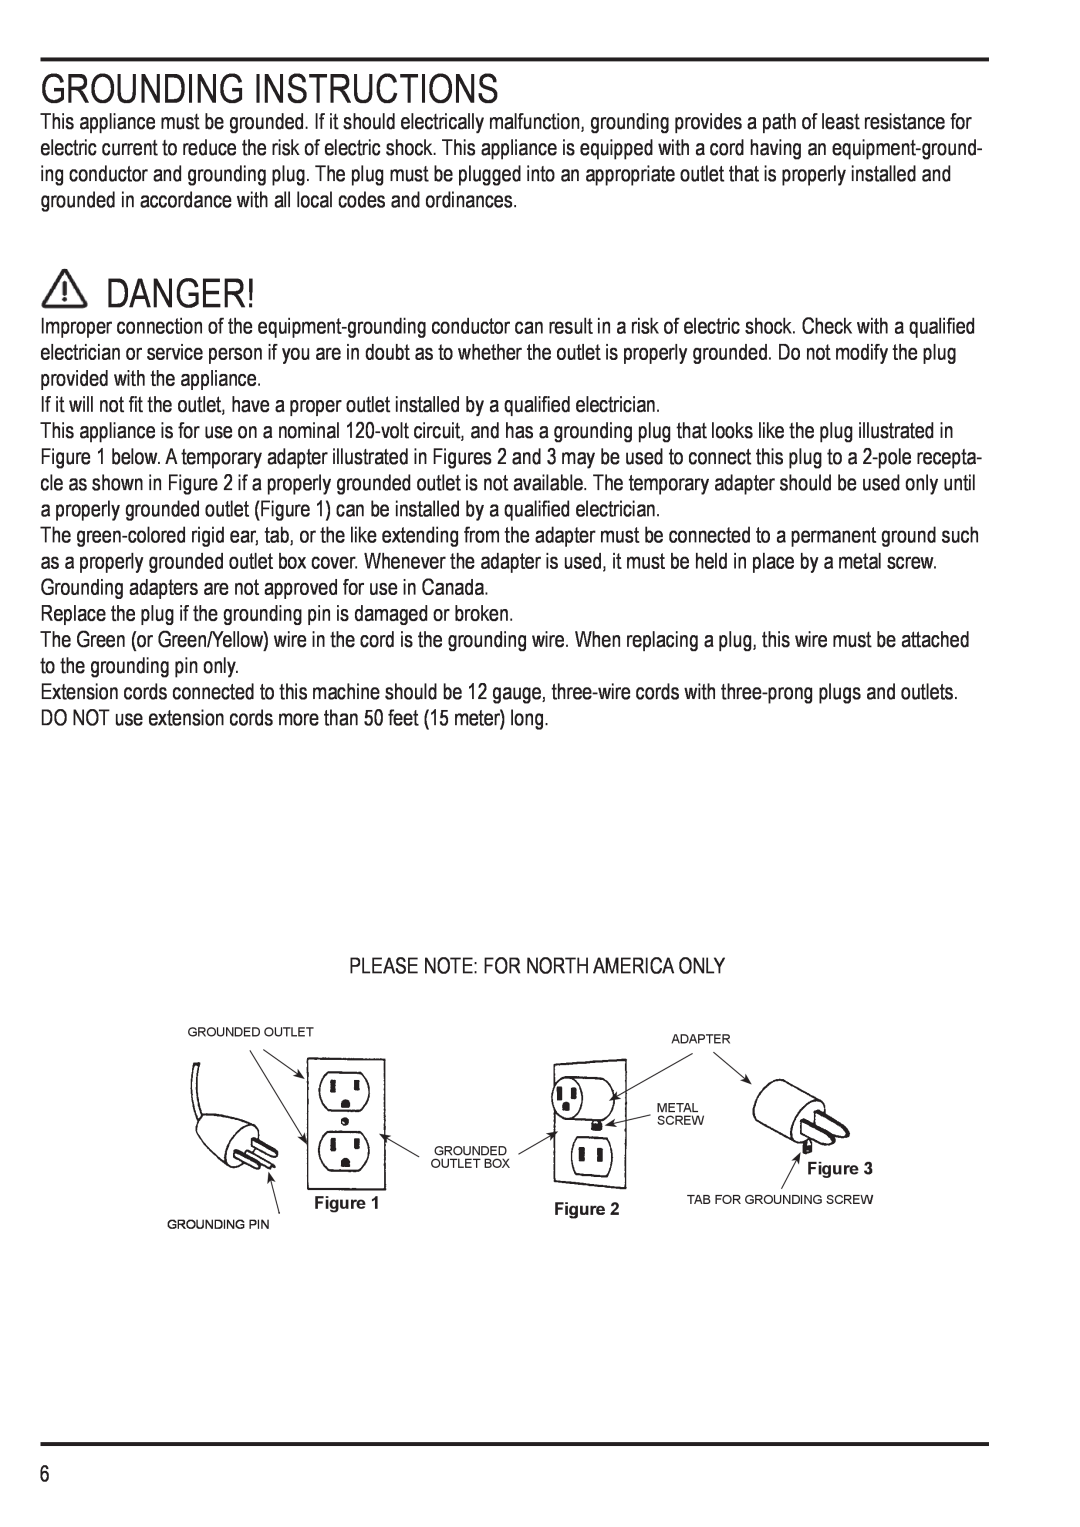 Nilfisk-Advance America 12H manual Grounding Instructions, Danger 